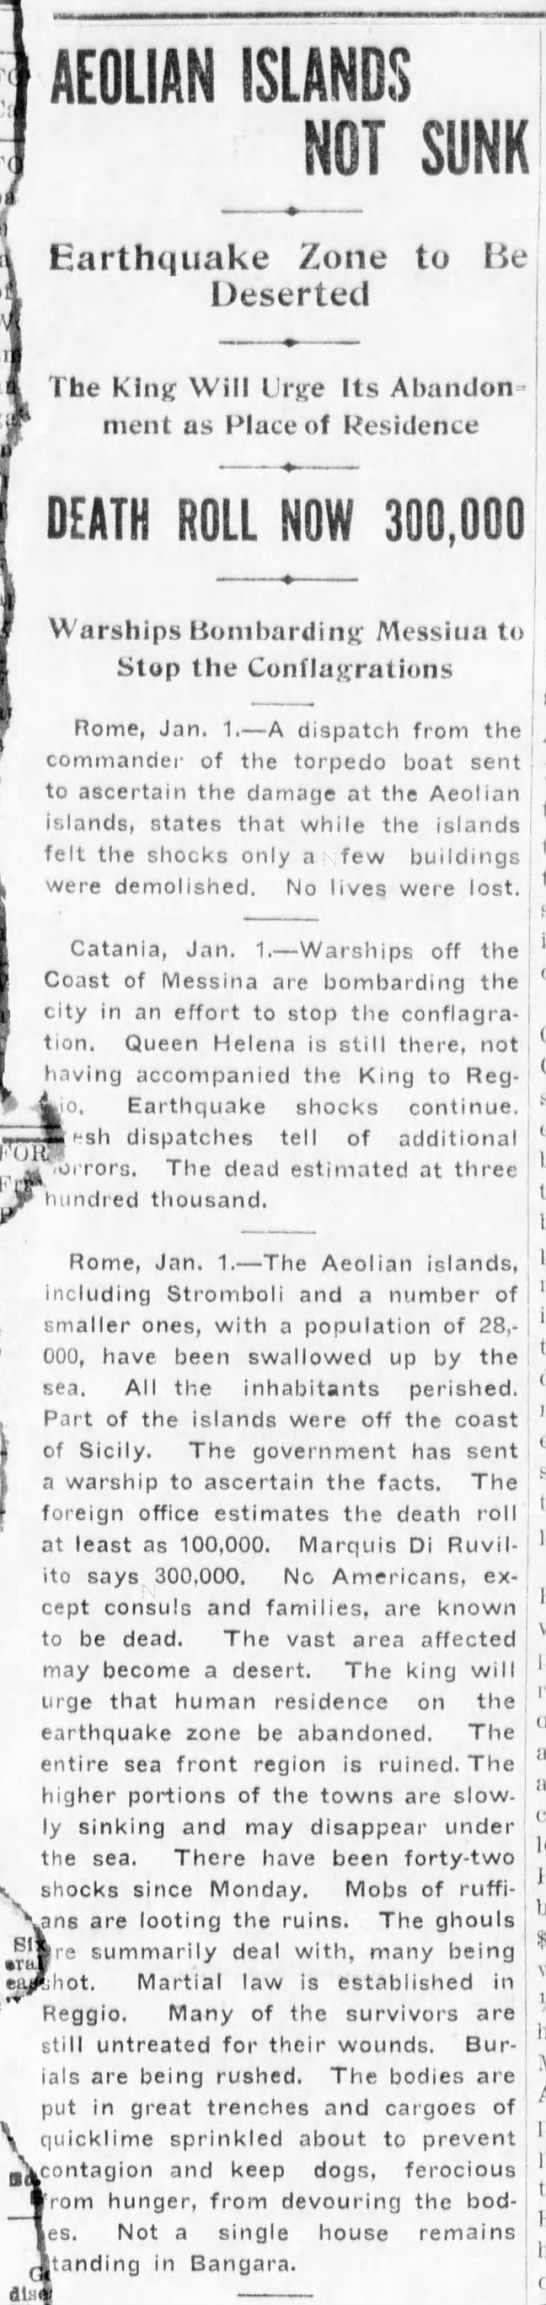 Aeolian Islands not "swallowed up" (1909). - 